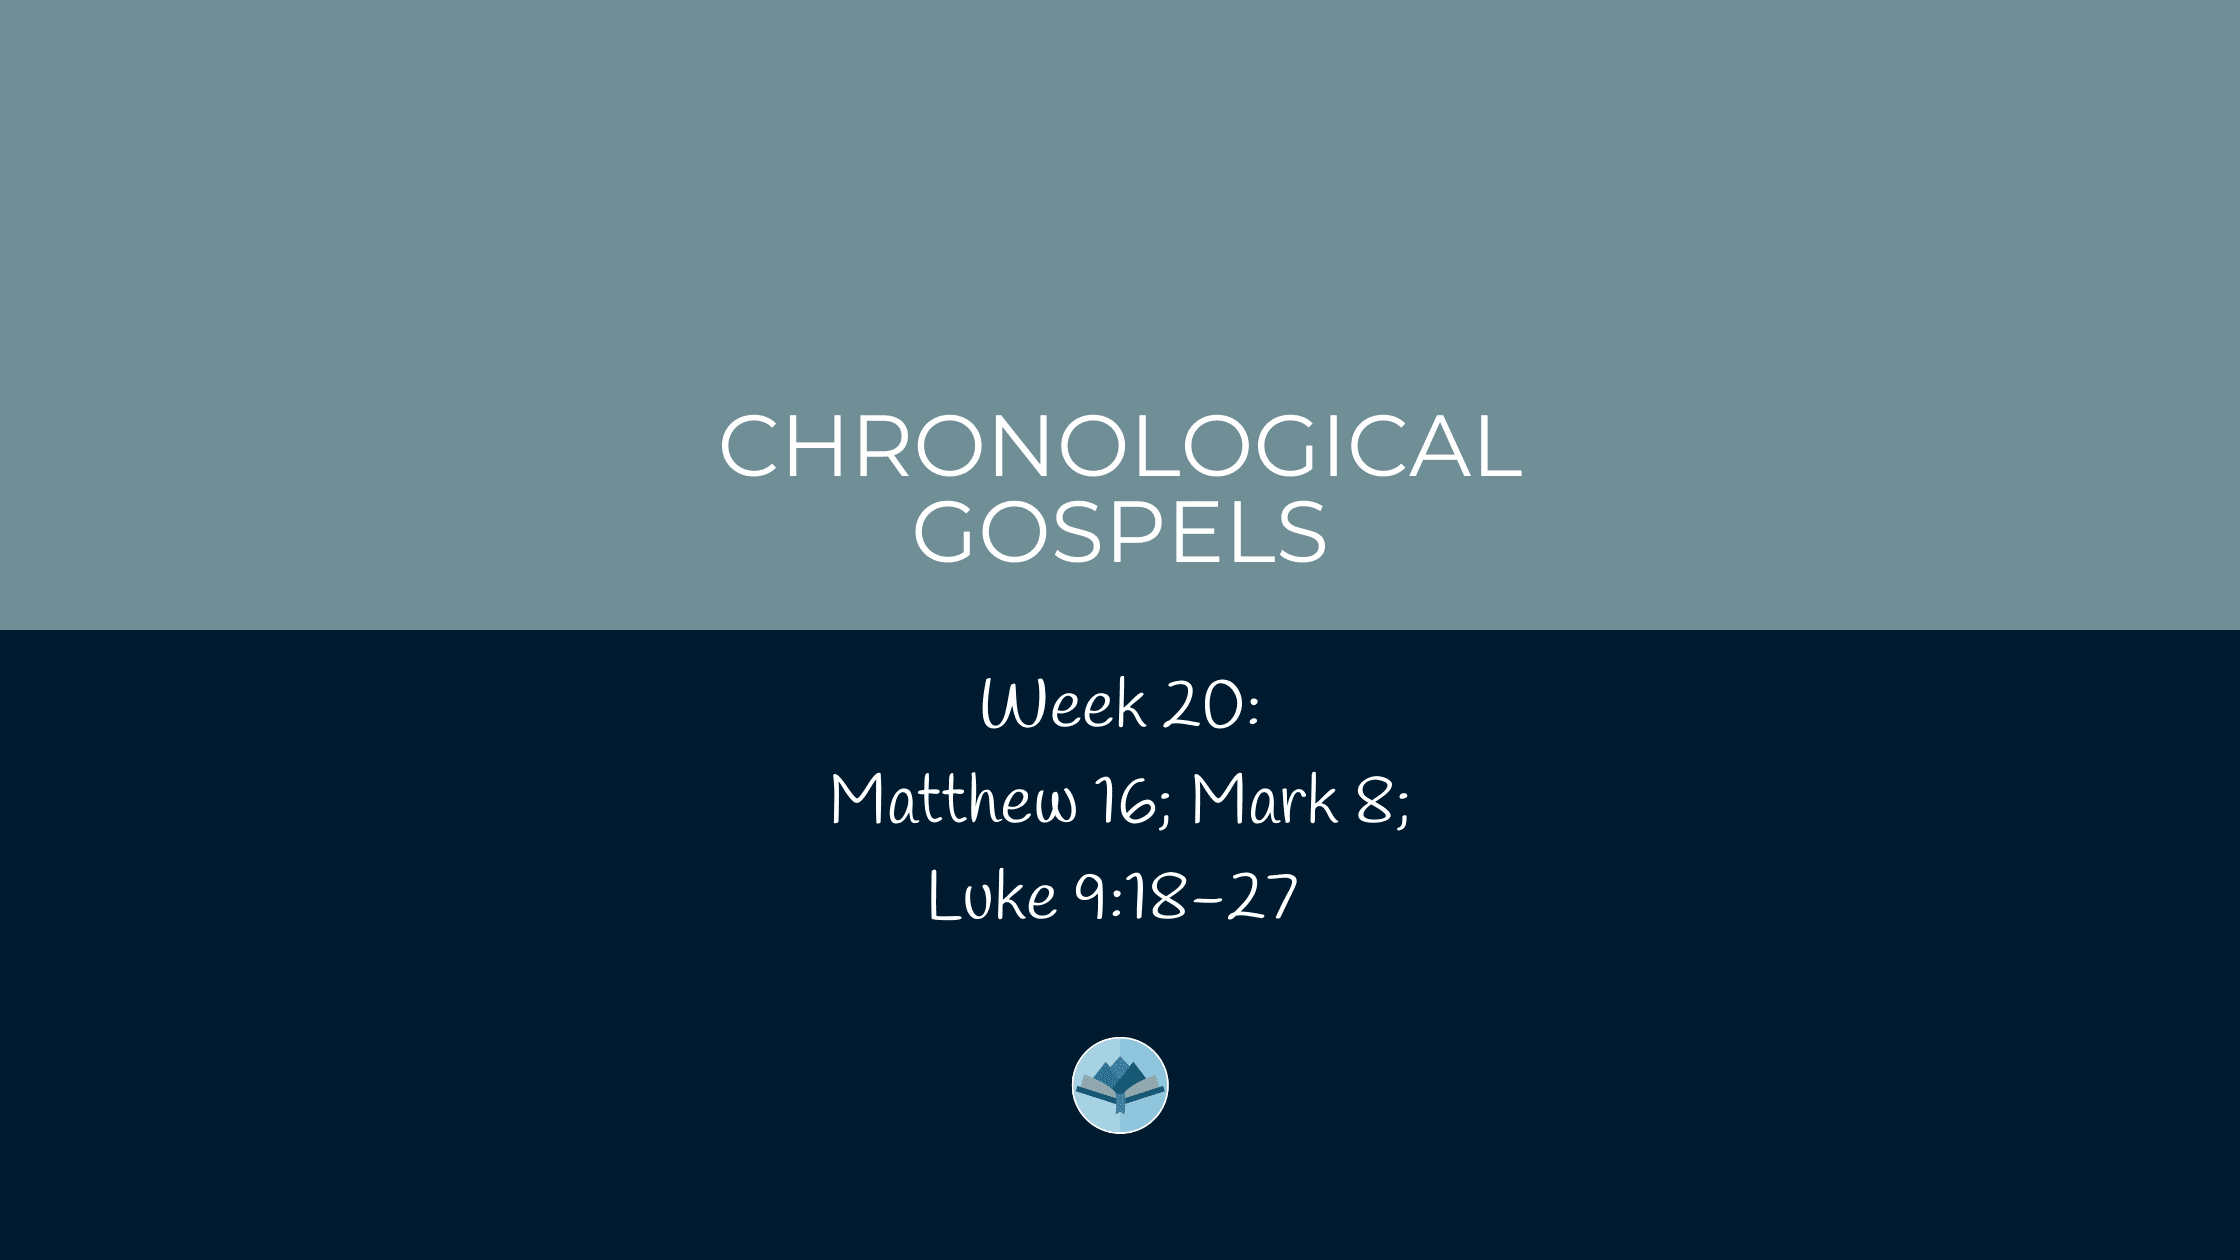 Chronological gospels week 20 Matthew 16; Mark 8; Luke 9:18-27